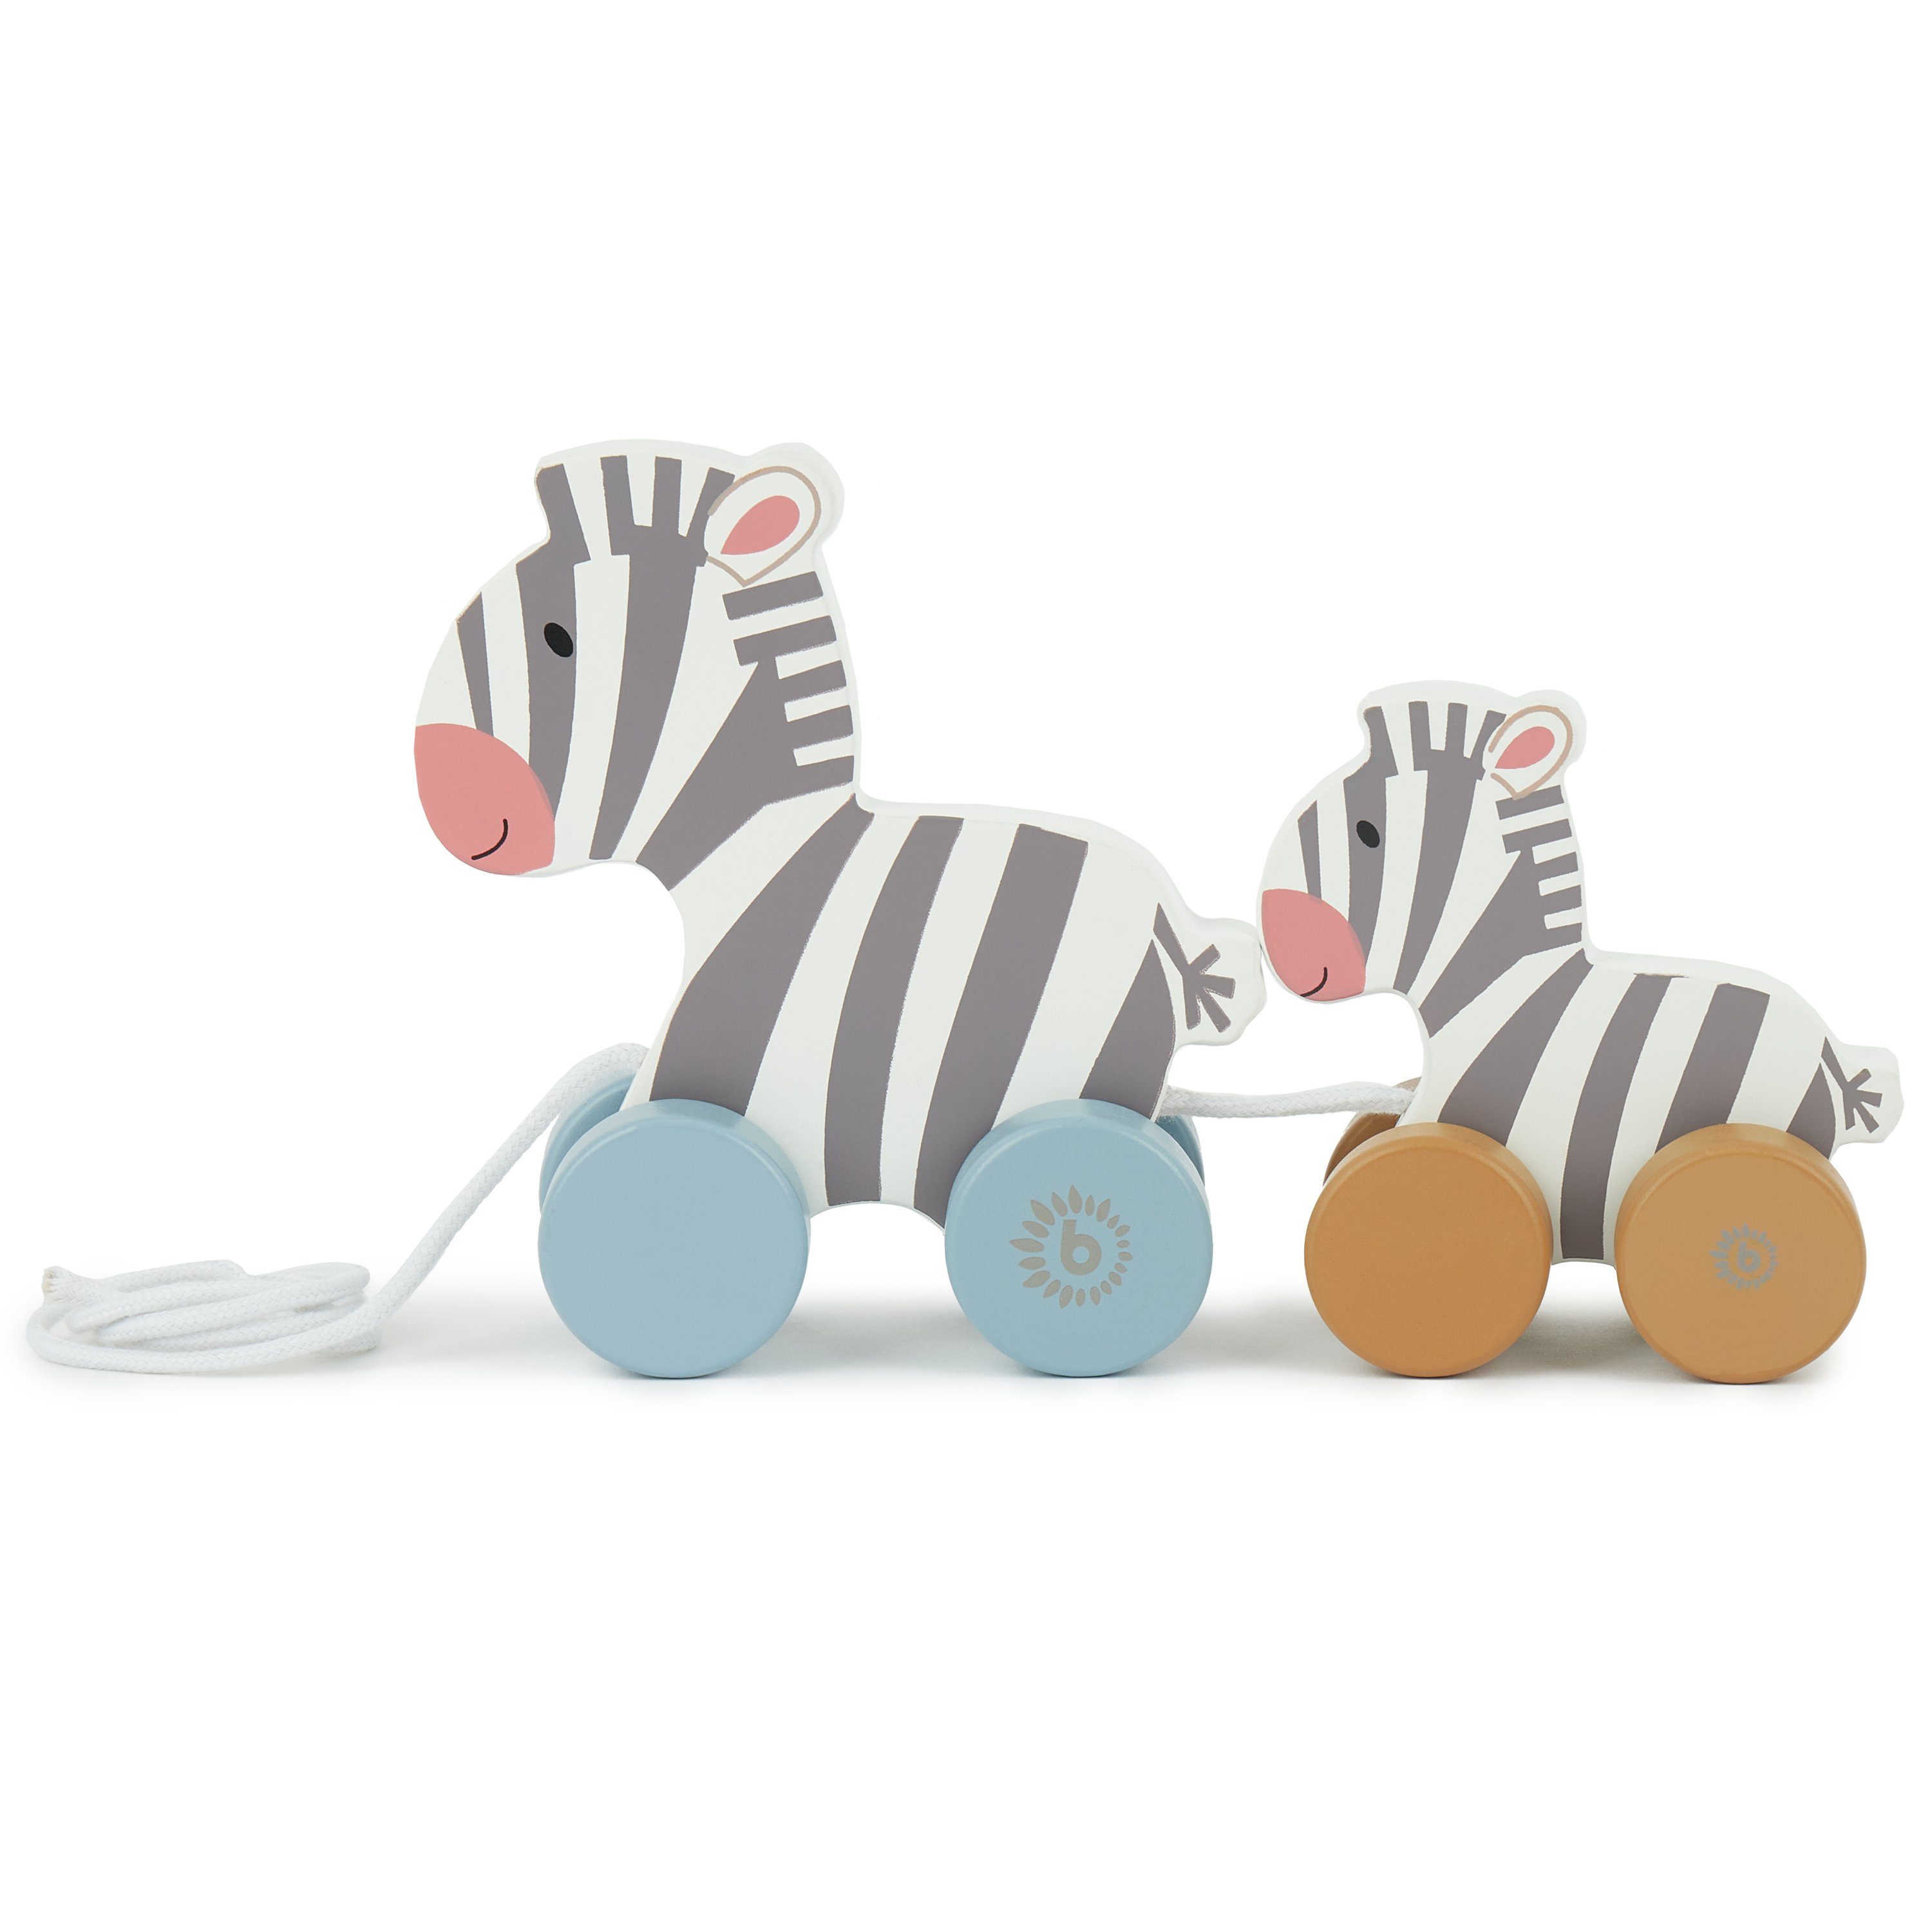 BIECO Nachziehtier Bieco Nachziehzebras Holz Nachziehspielzeug ab 1 Jahr Süßes Nachziehtier aus Holz Baby Spielzeug Holz Zebras zum Nachziehen Ziehtiere Holz ab 1 Jahr Holzspielzeug Nachzieh-Zebra Familie